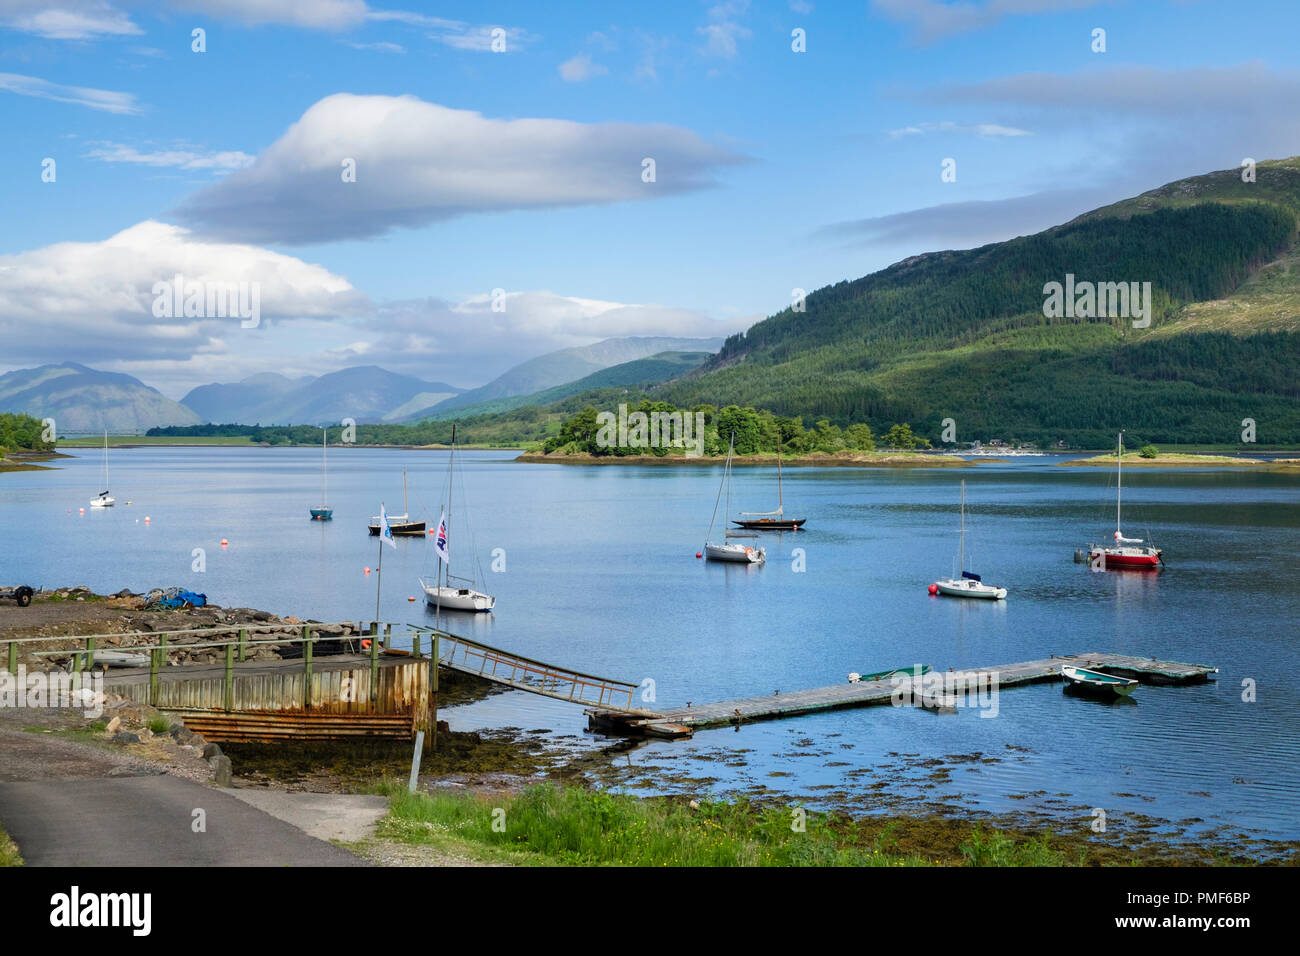 Angelegte Boote und Bootsanleger im Loch Leven an der schottischen Westküste. Glencoe, Highland, Schottland, Großbritannien, Großbritannien Stockfoto